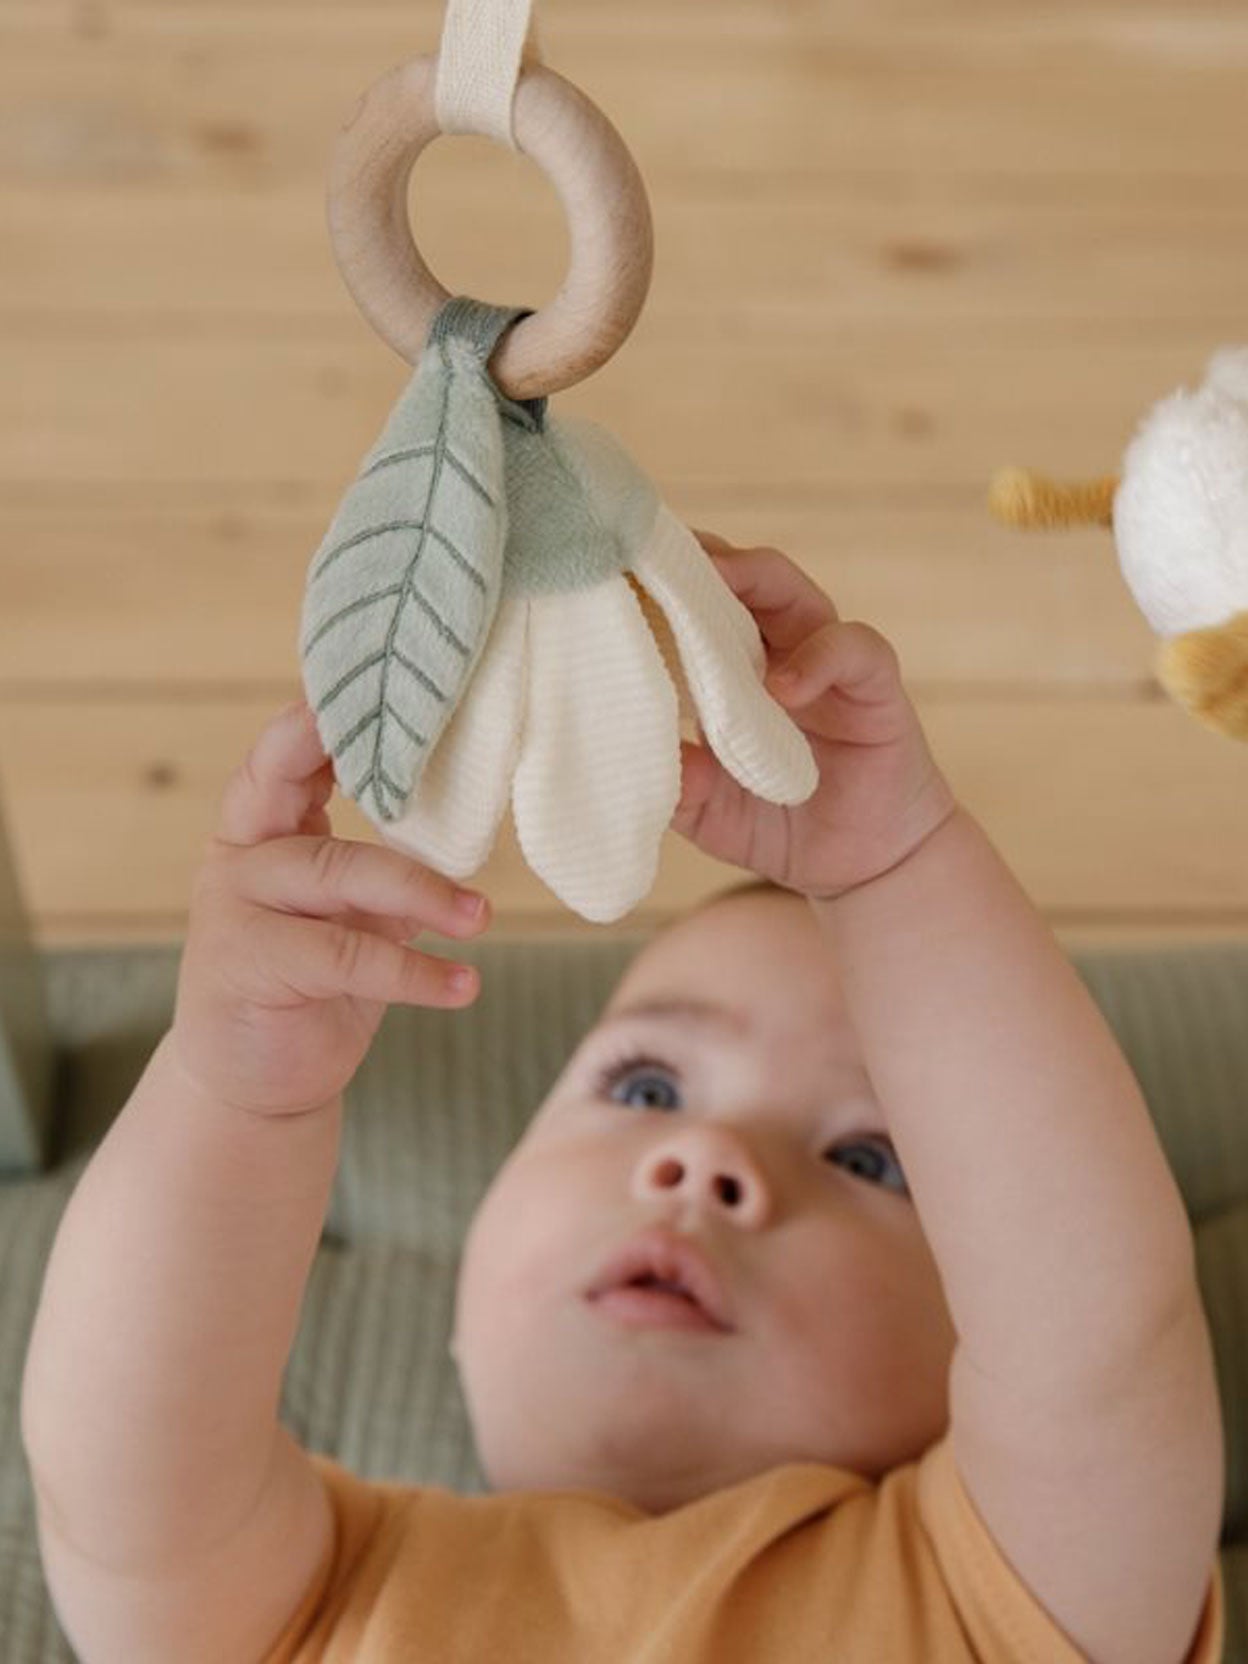 Gimnasio bebé con juguetes del mar - Little Dutch - Regalo bebé